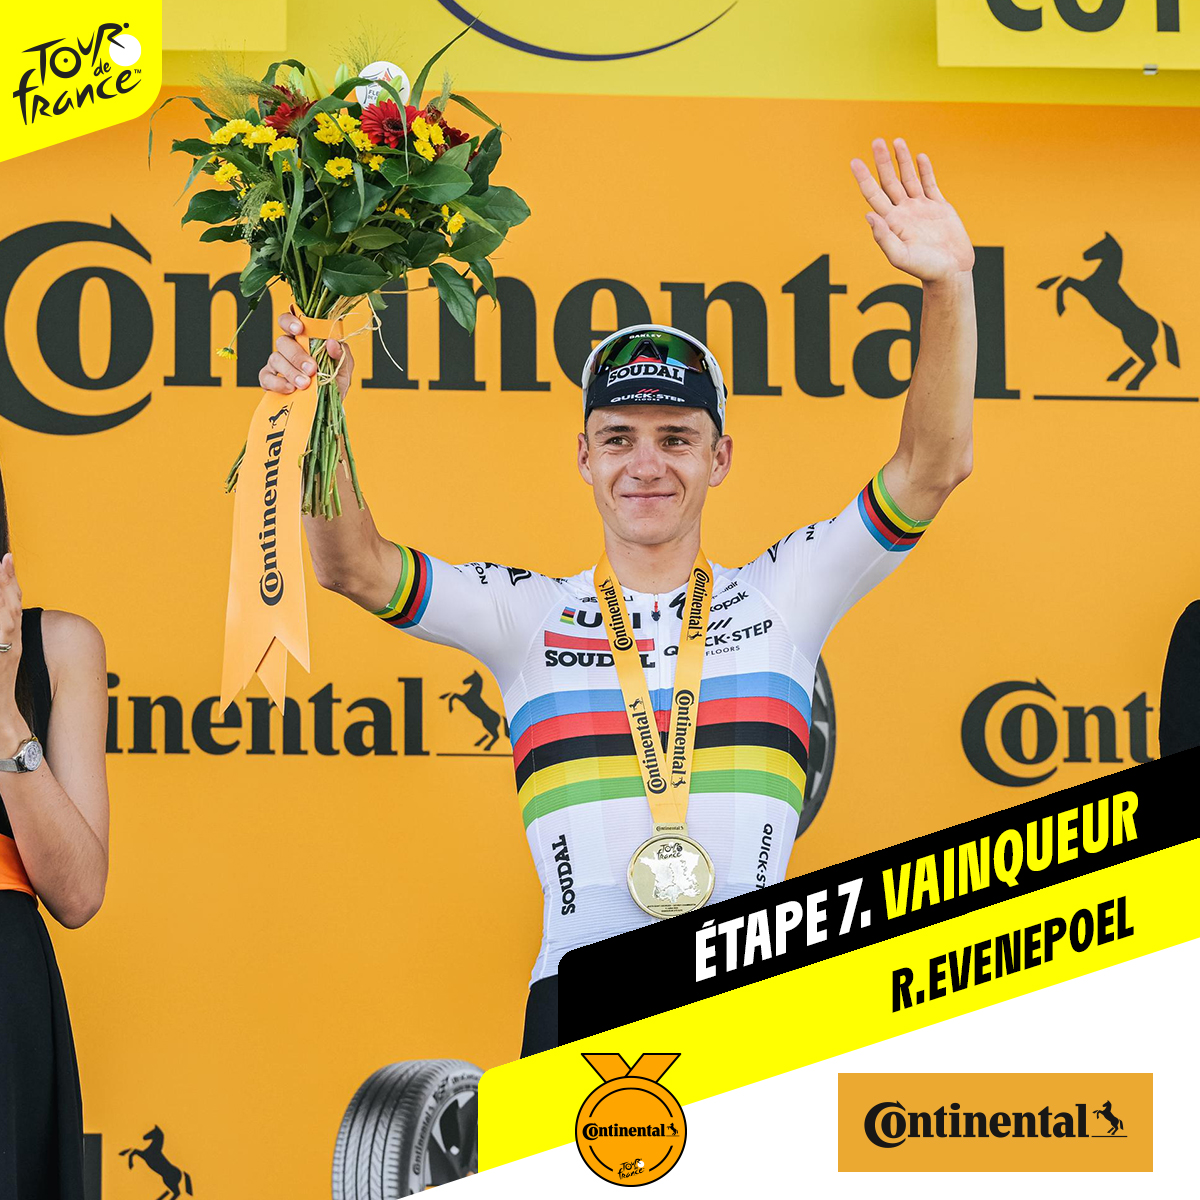 Tour de France: Evenepoel vince, ma Pogacar resta in giallo. Giornata triste: è morto Geminiani, compagno di Coppi